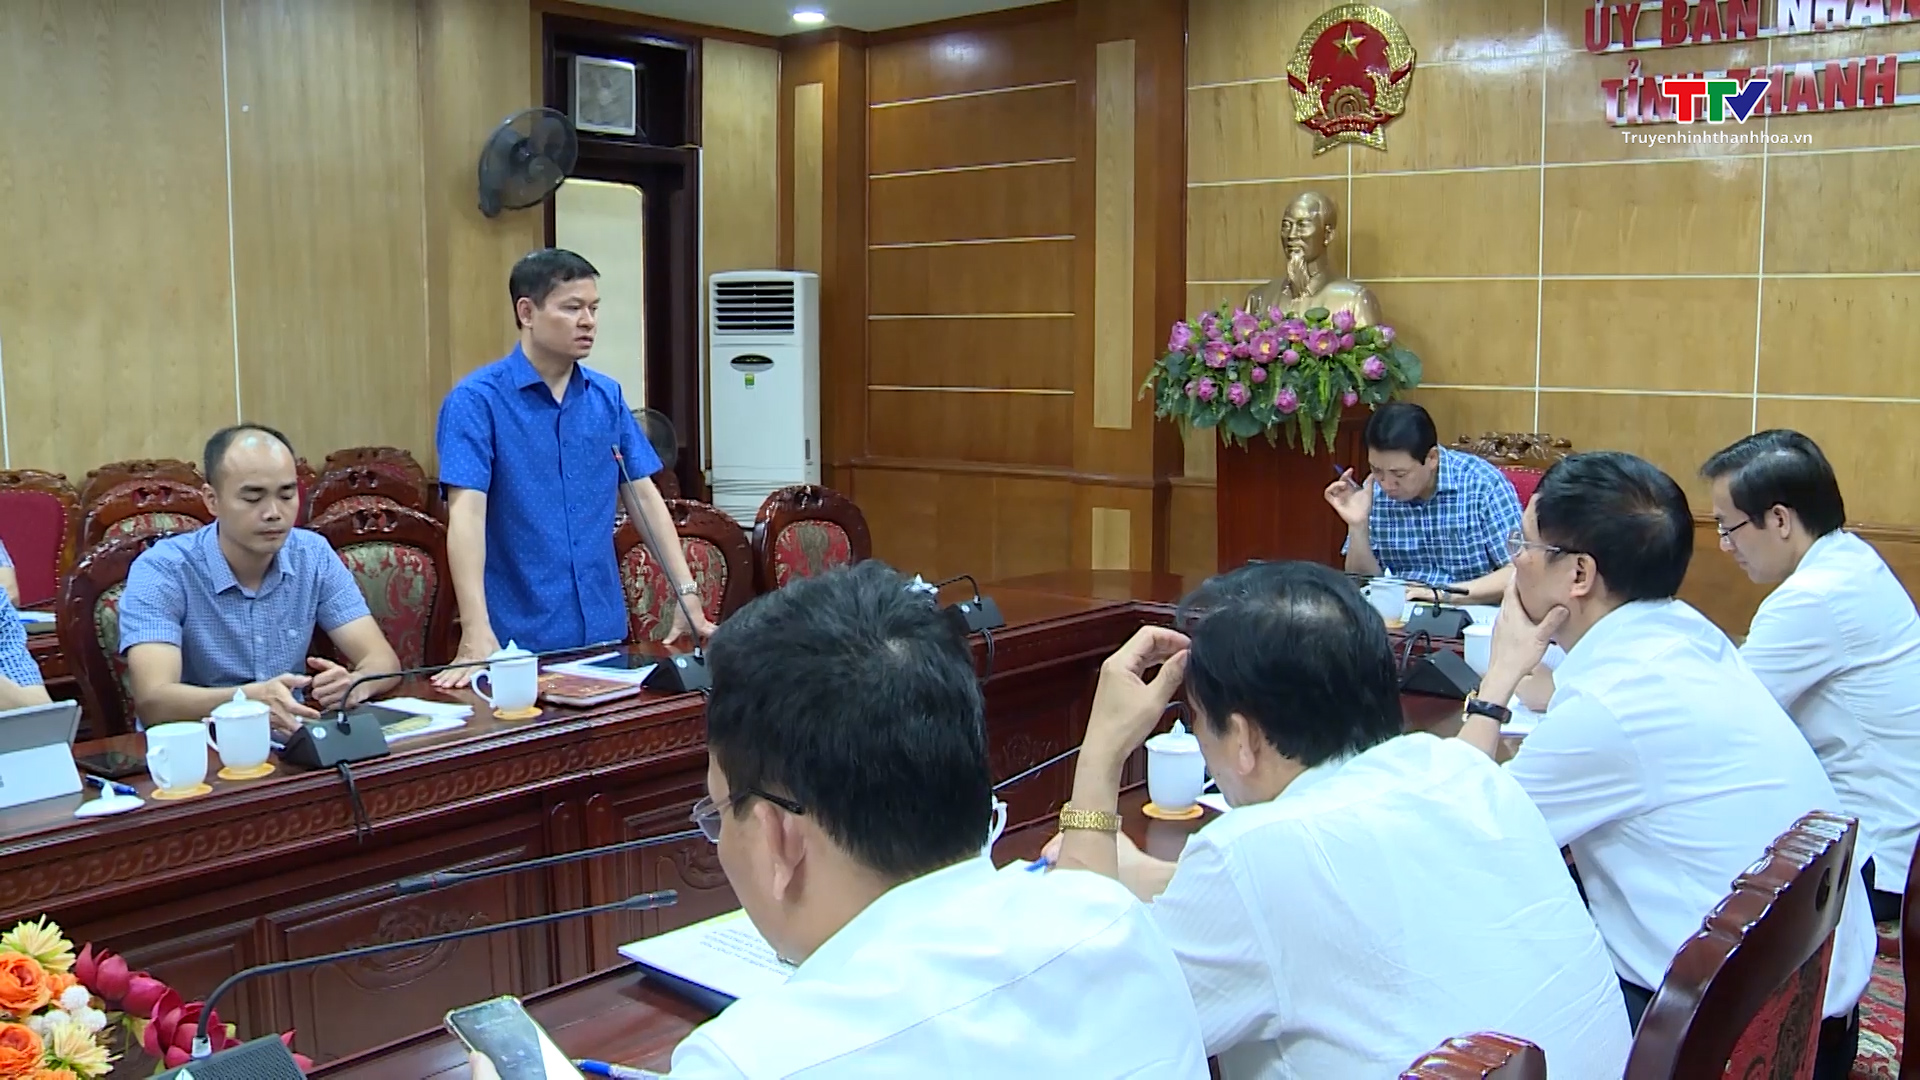 Phương án cấp nước từ sông Hoạt phục vụ cho sản xuất  của Nhà máy xi măng Long Sơn - Ảnh 2.